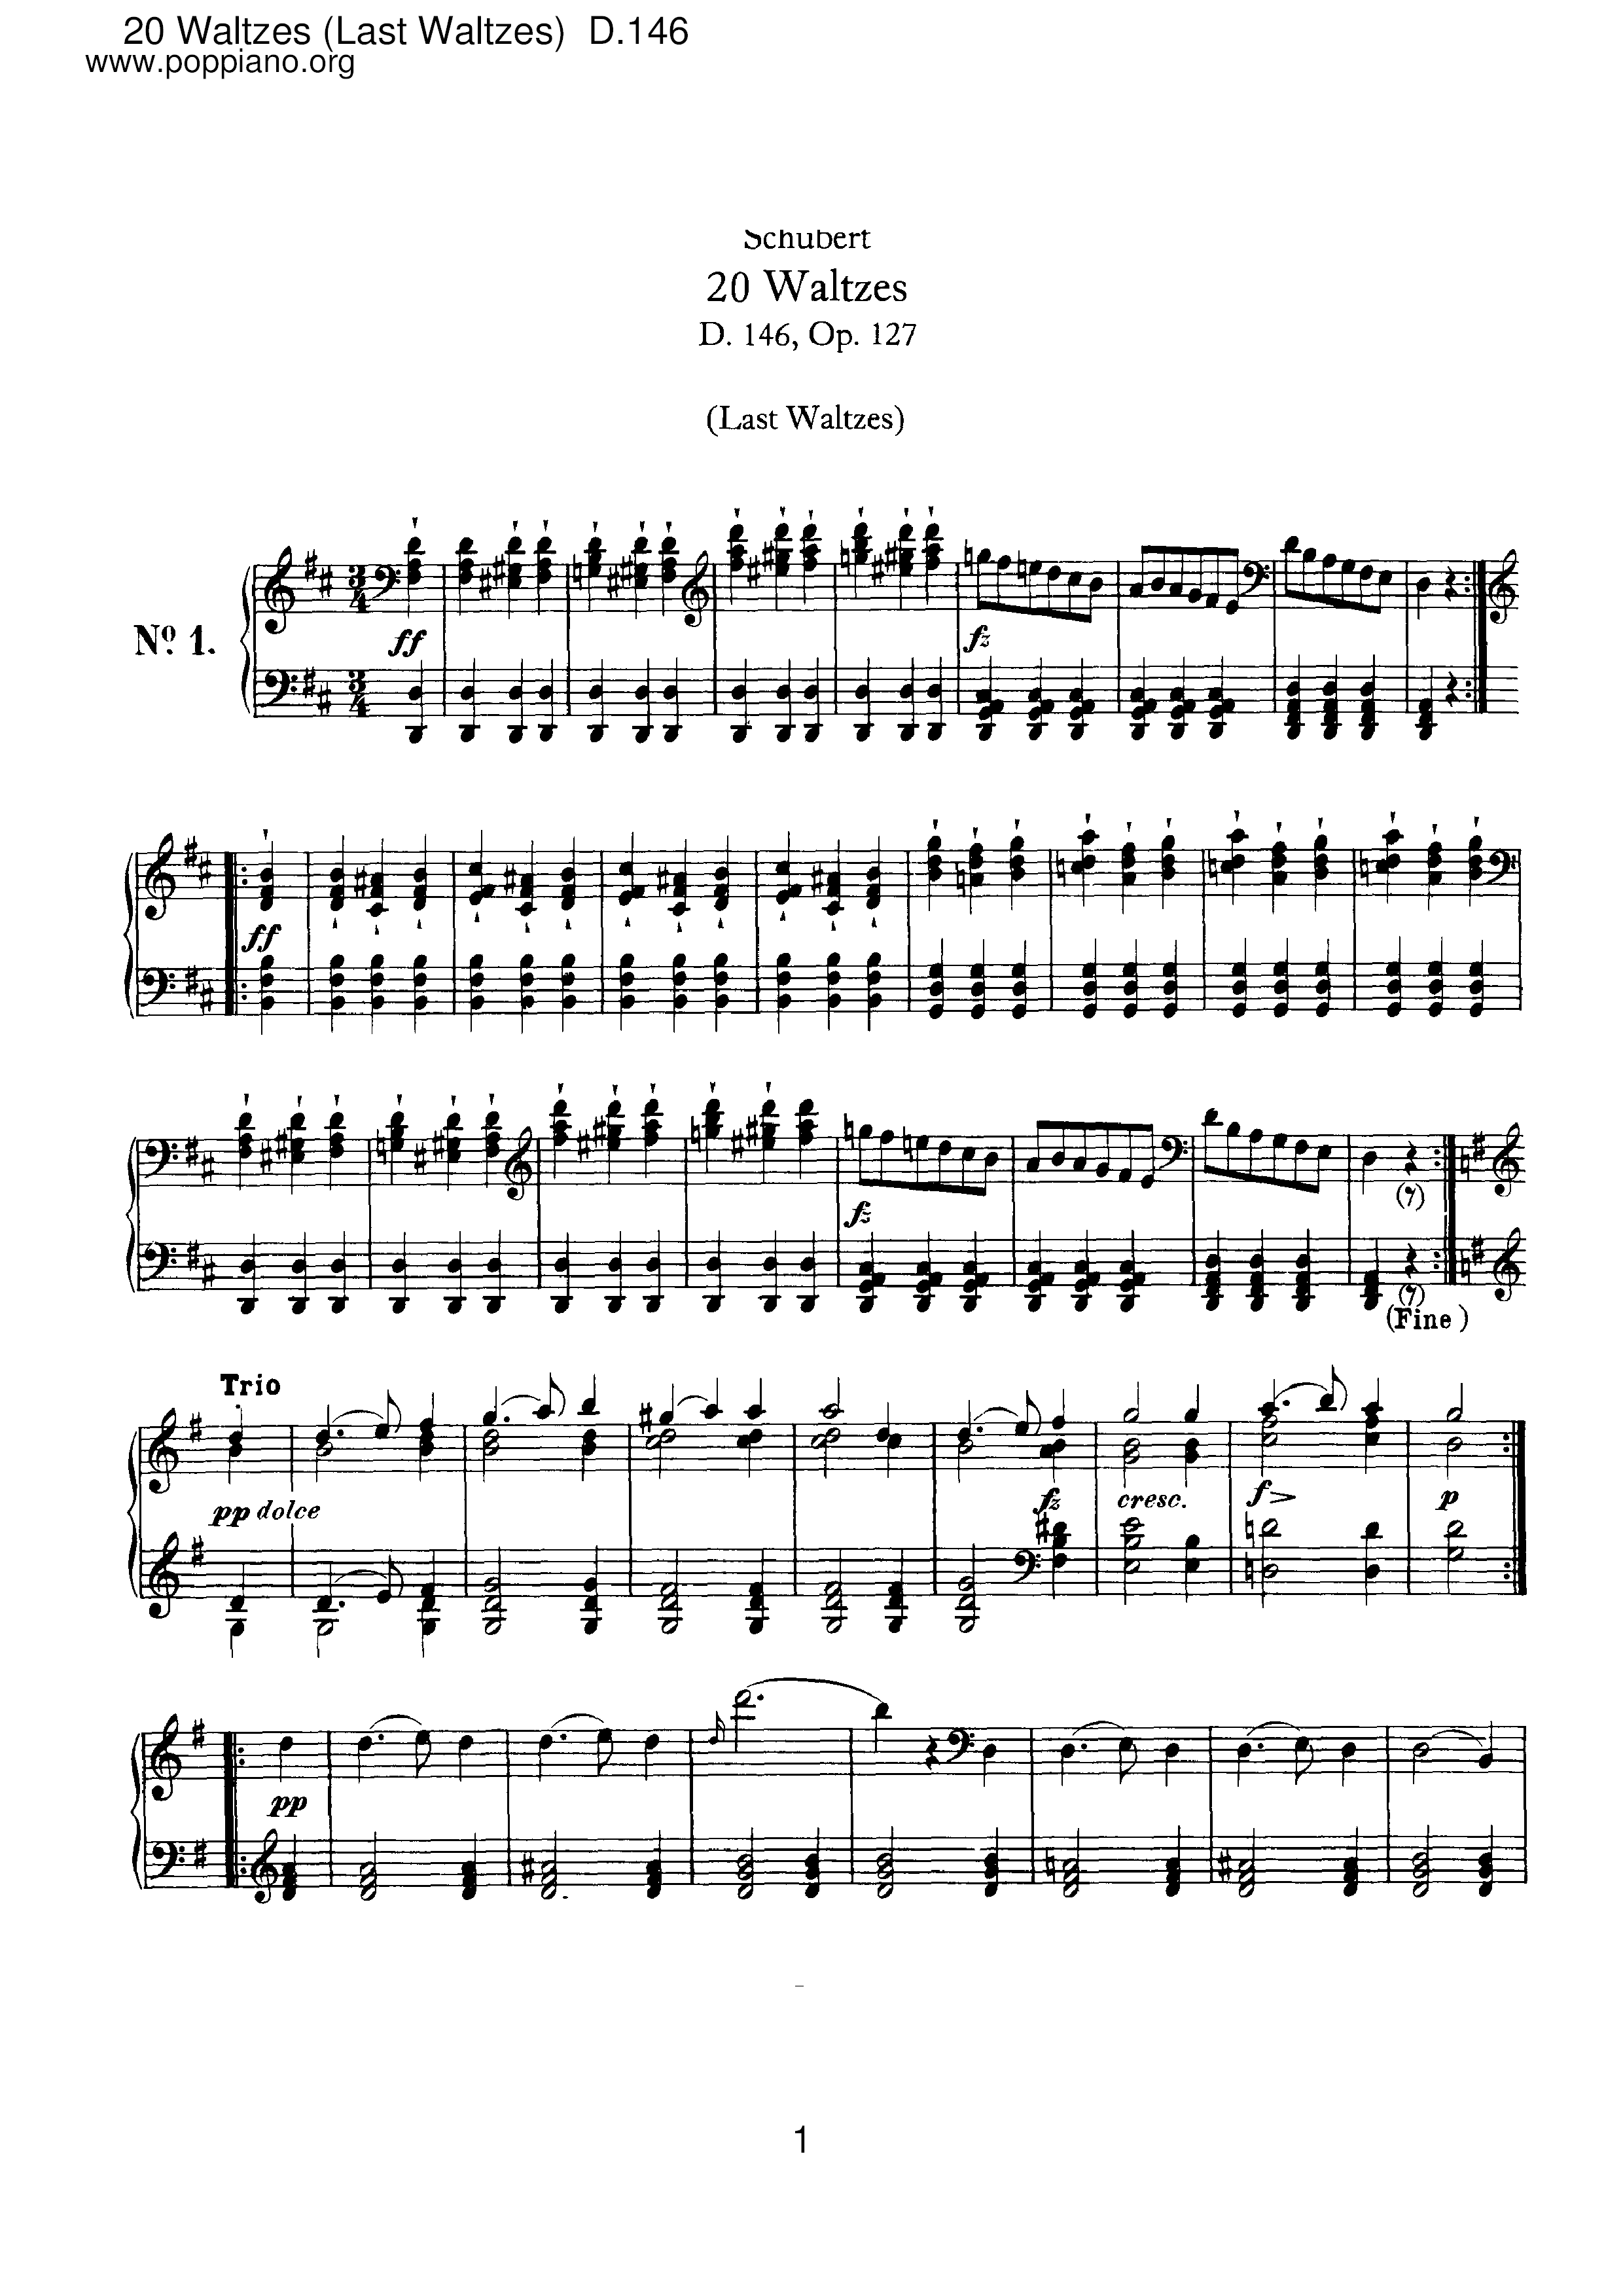 20 Waltzes (Last Waltzes), D.146 (Op.127)琴谱